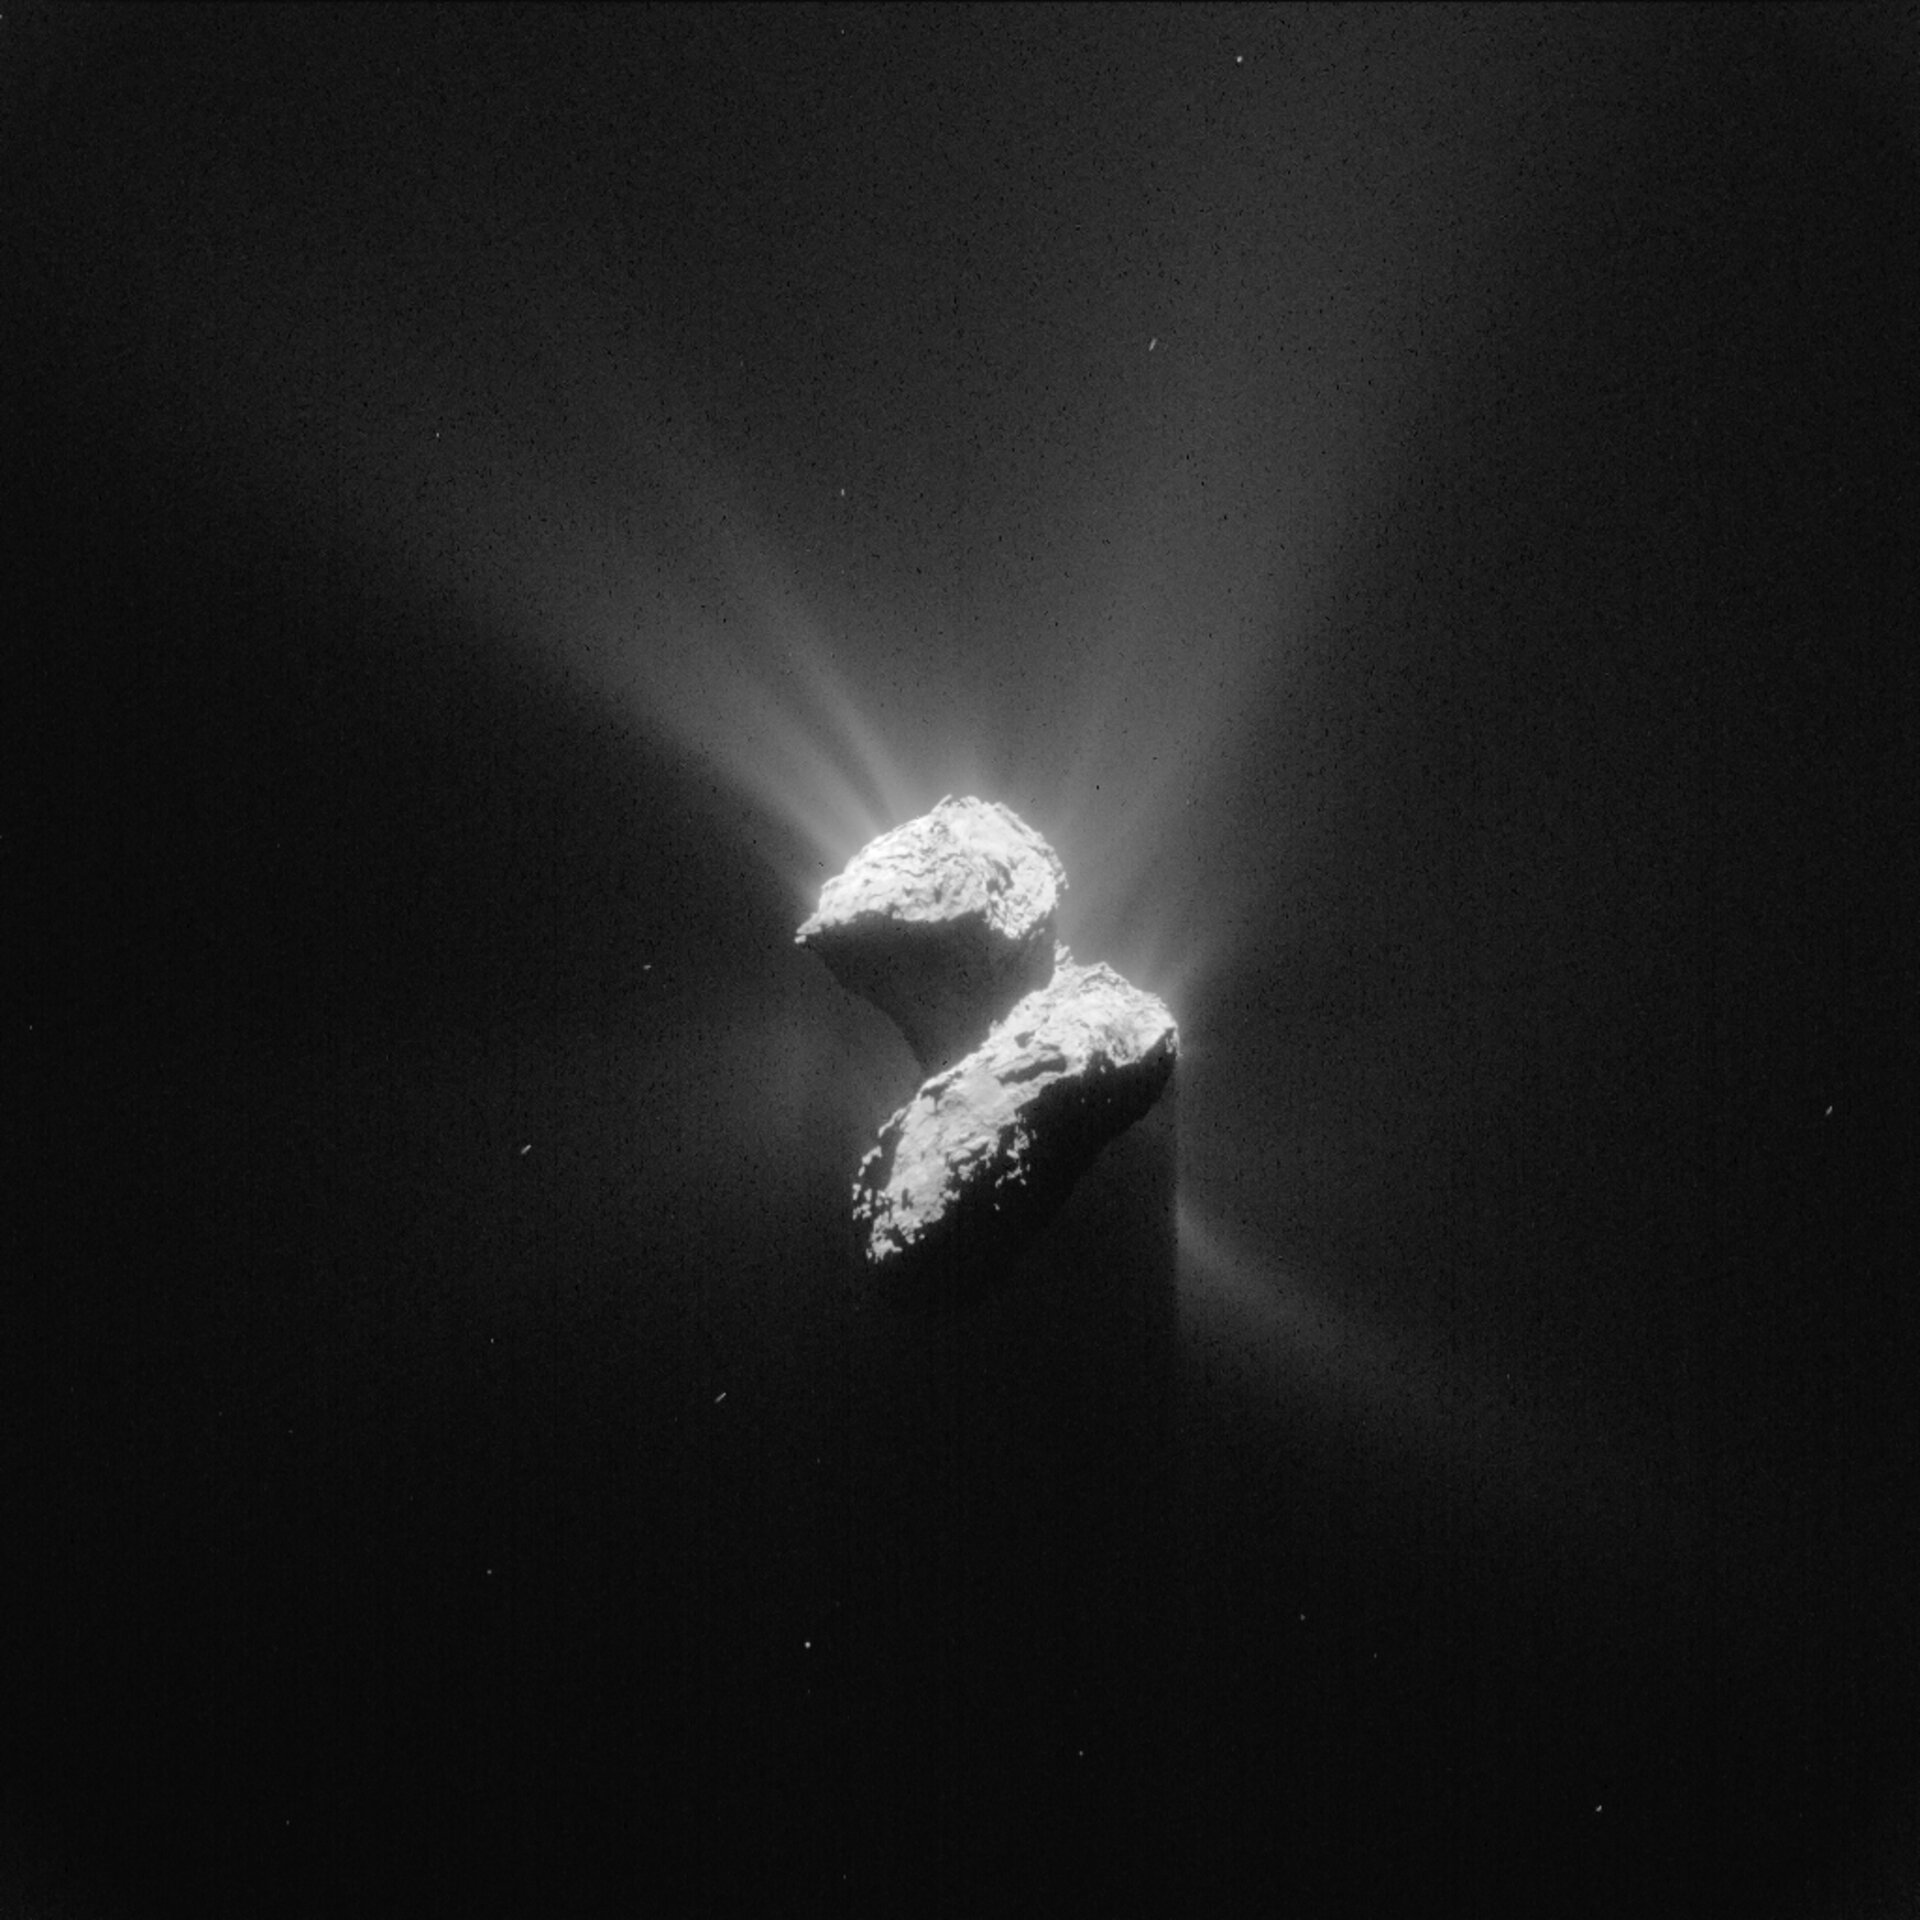 Comet 67/P on 5 June 2015